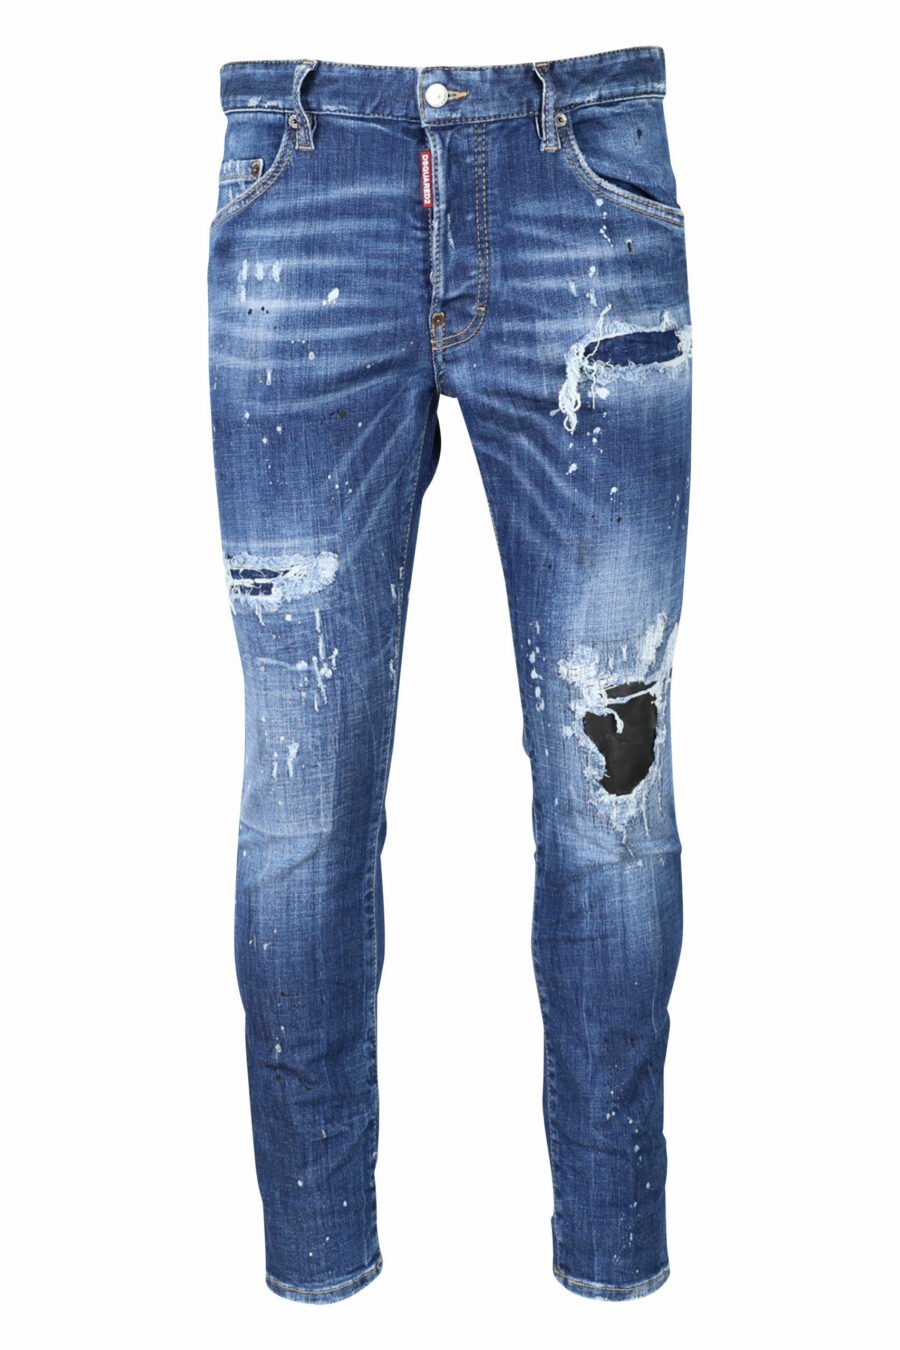 Jeans "super twinkey jean" blau ausgefranst mit schwarz gerissen - 8054148124328 skaliert